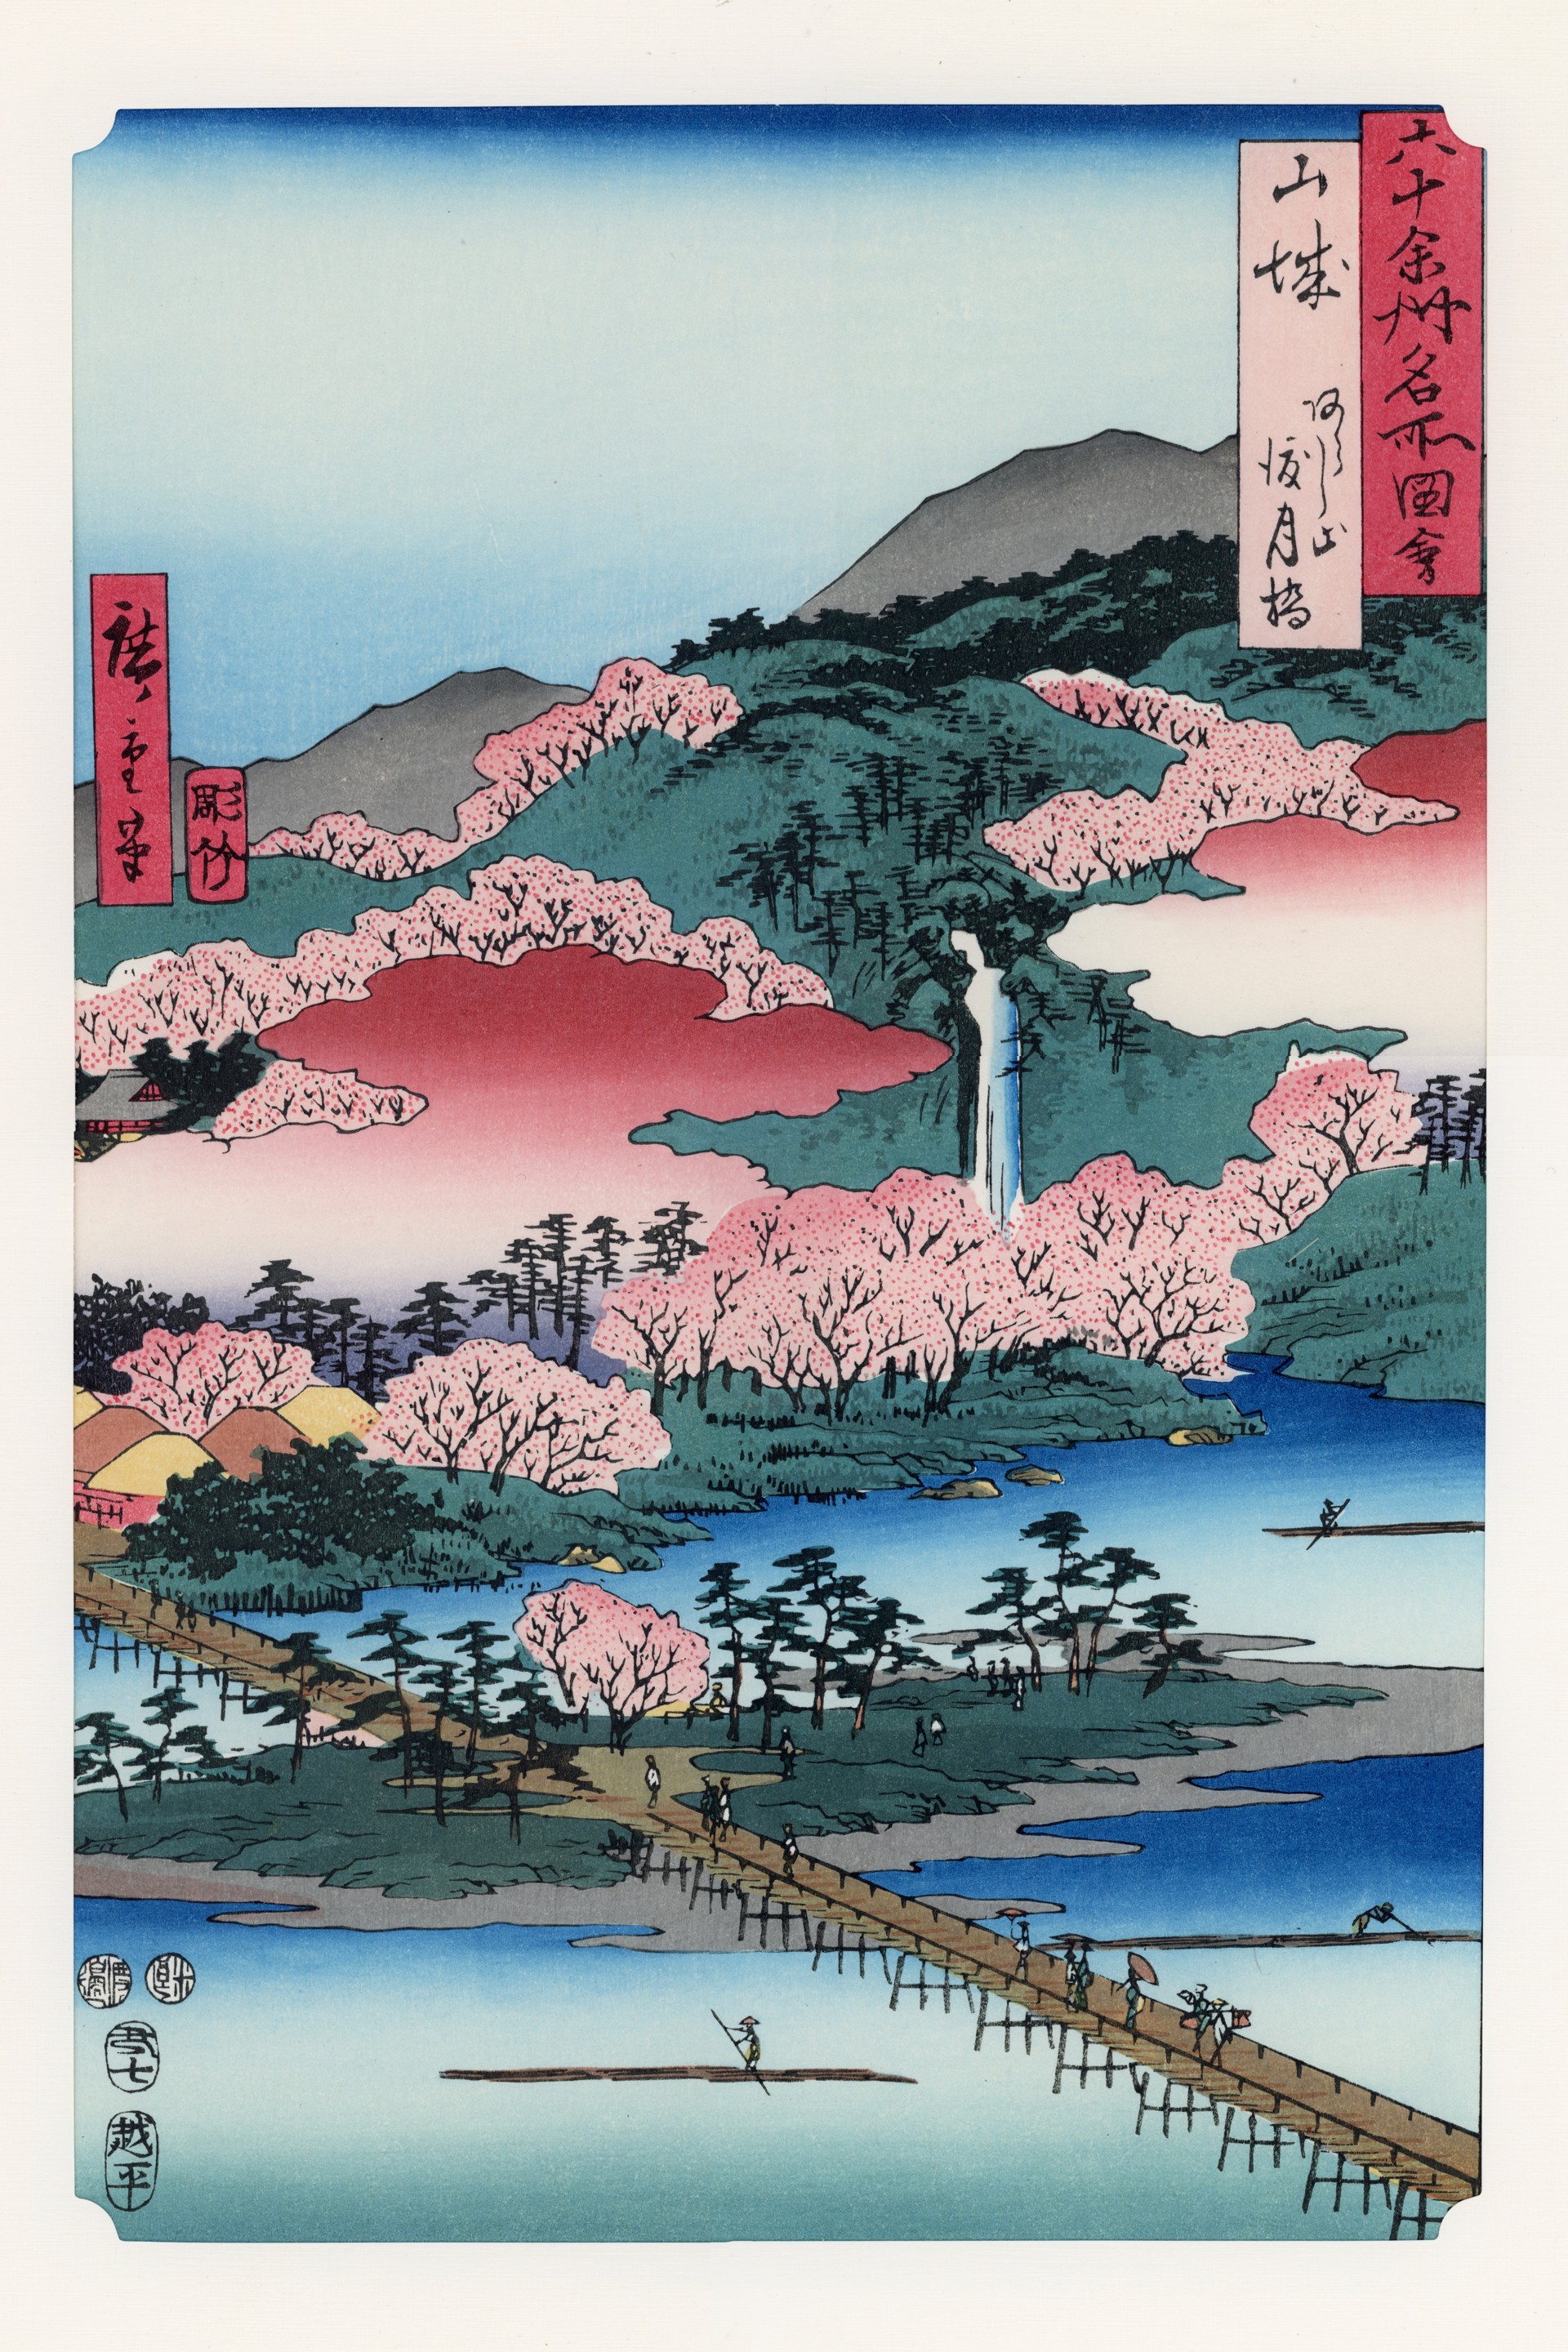 六⼗余州名所图绘——⼭城国 岚⼭杜⽉桥 by 歌川⼴重 Utagawa Hiroshige